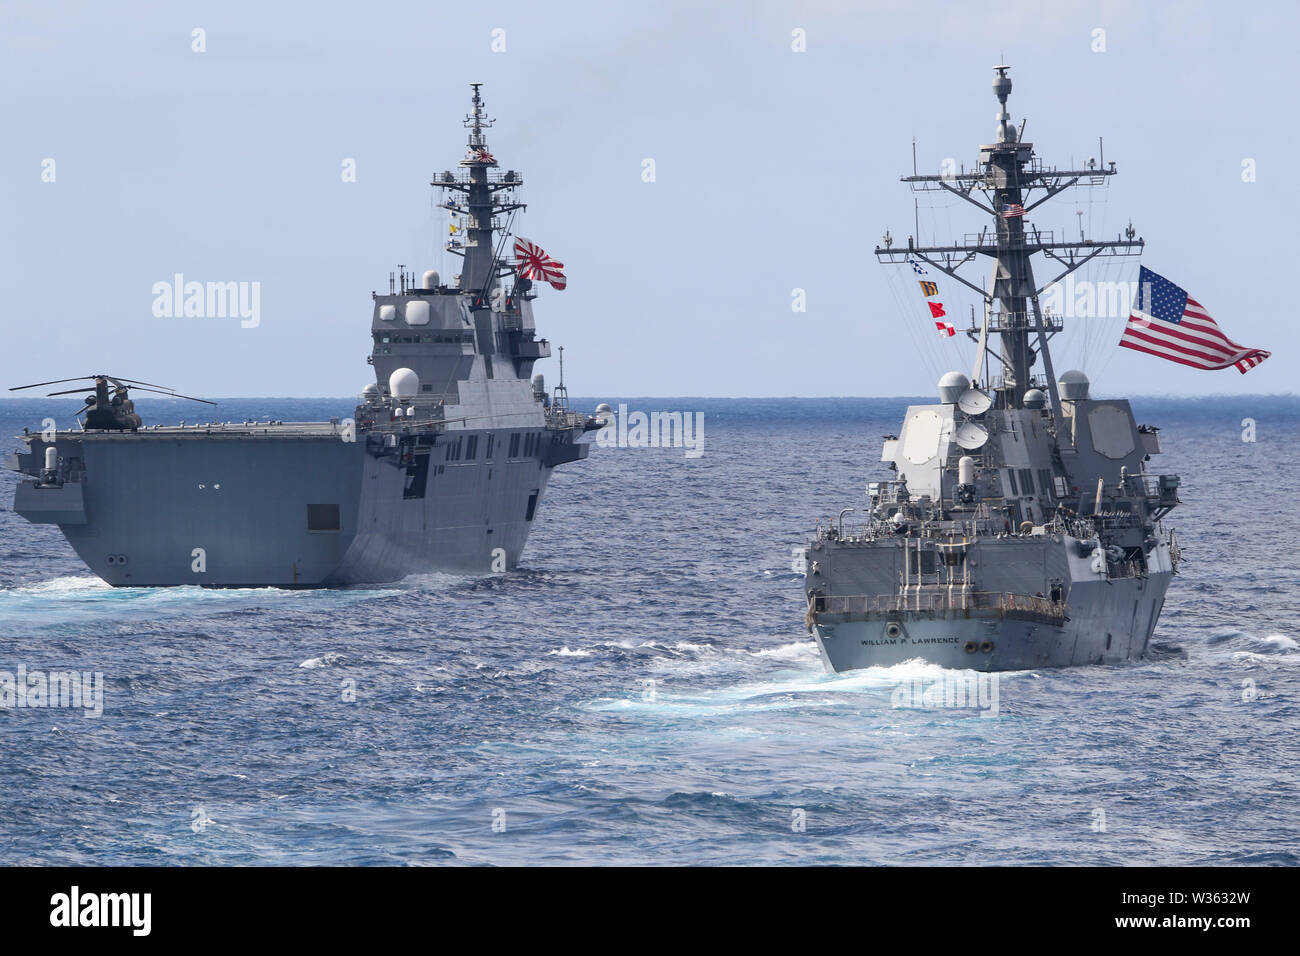 190711-N-DX 072-1012 tasmanischen Meer (11. Juli 2019) Die Japan Maritime Verteidigung-kraft Hyūga-Klasse Hubschrauber Zerstörer JS Ise (DDH182), links, und der US-Navy der Arleigh-Burke-Klasse geführte Anti-raketen-Zerstörer USS William S. Lawrence (DDG110) Transit mit dem amphibious Transport dock Schiff USS Green Bay LPD (20) in einem Foto Übung (Photoex) während der Talisman Sabre 2019. Green Bay, Teil der Wasp Expeditionary Strike Group, mit 31 Marine Expeditionary Unit begonnen, nimmt derzeit an Talisman Sabre 2019 vor der Küste im Norden von Australien. Eine bilaterale, Biennale, Talisman Sabre Stockfoto